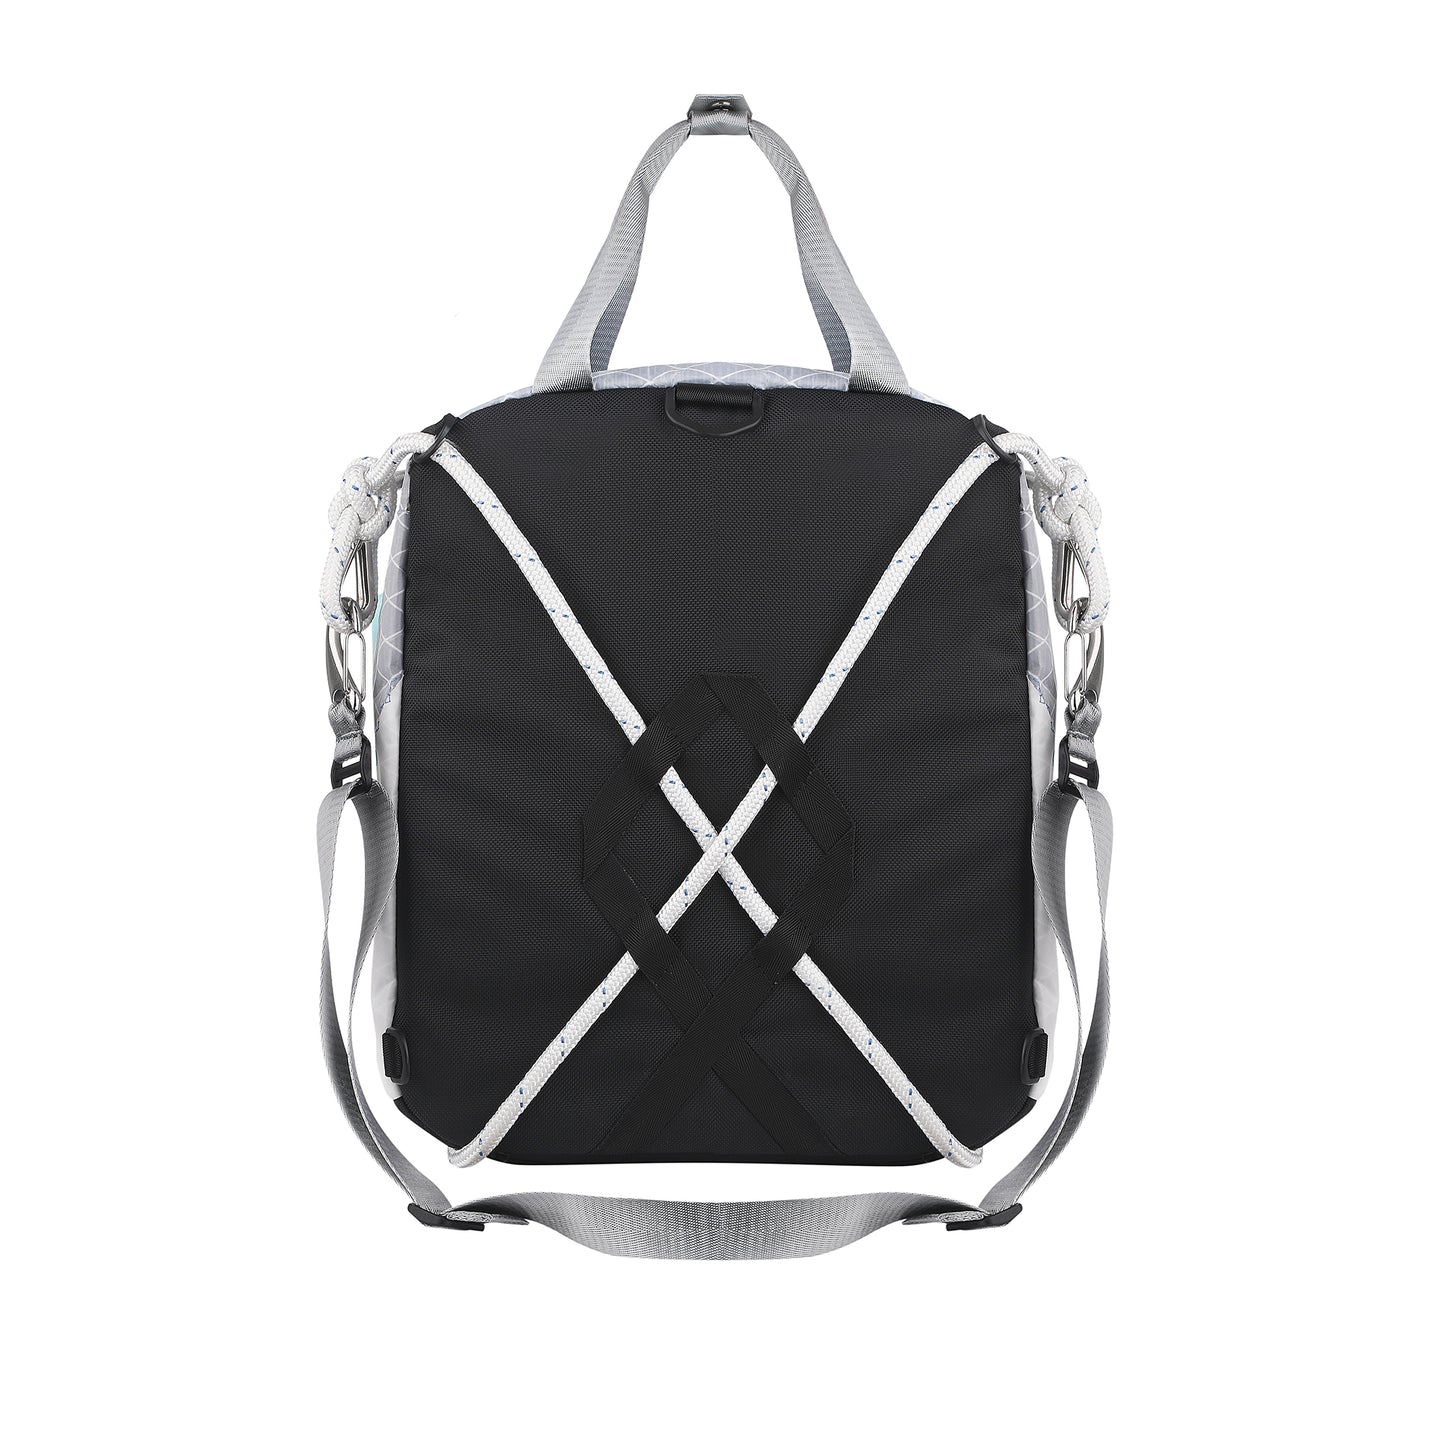 Designer silver, grey and black handbag-backpack